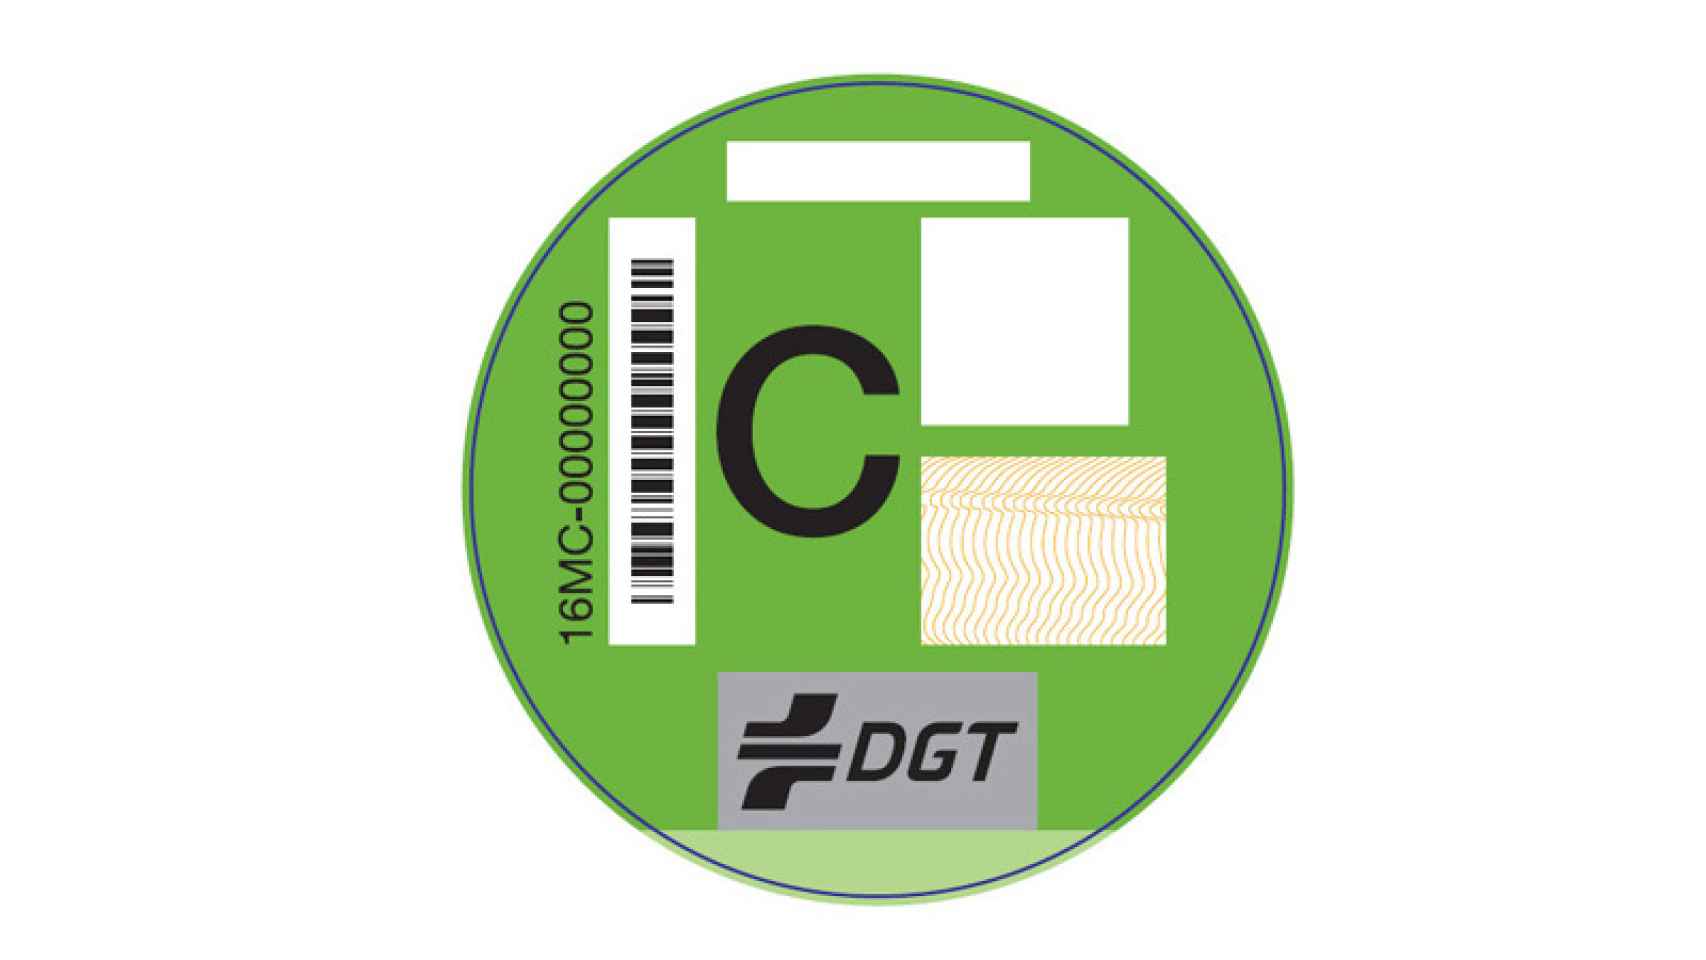 Etiqueta C de la DGT.